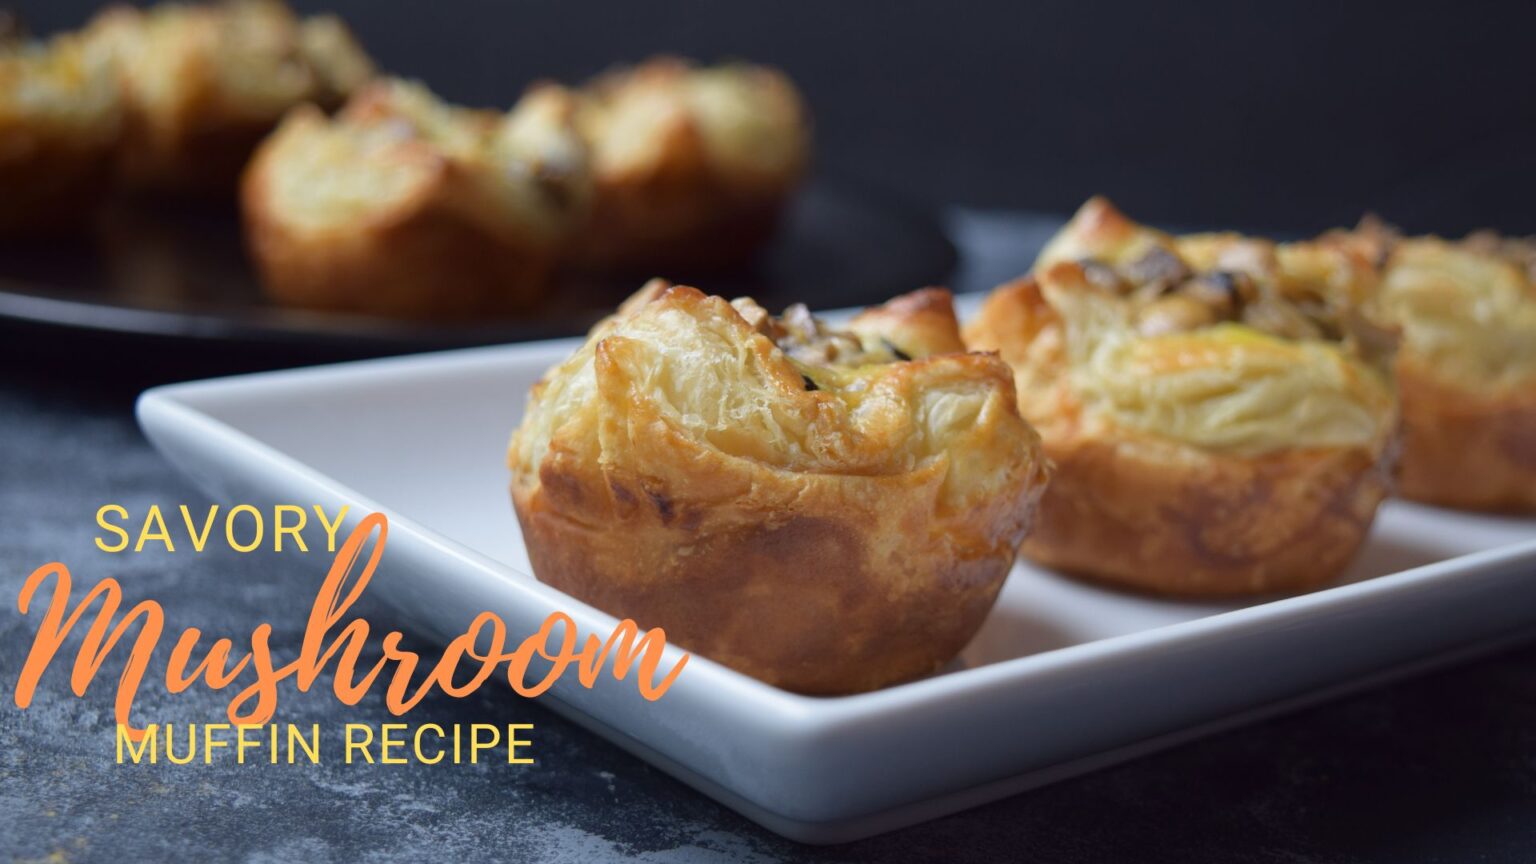 Savory Mushroom Muffin Recipe